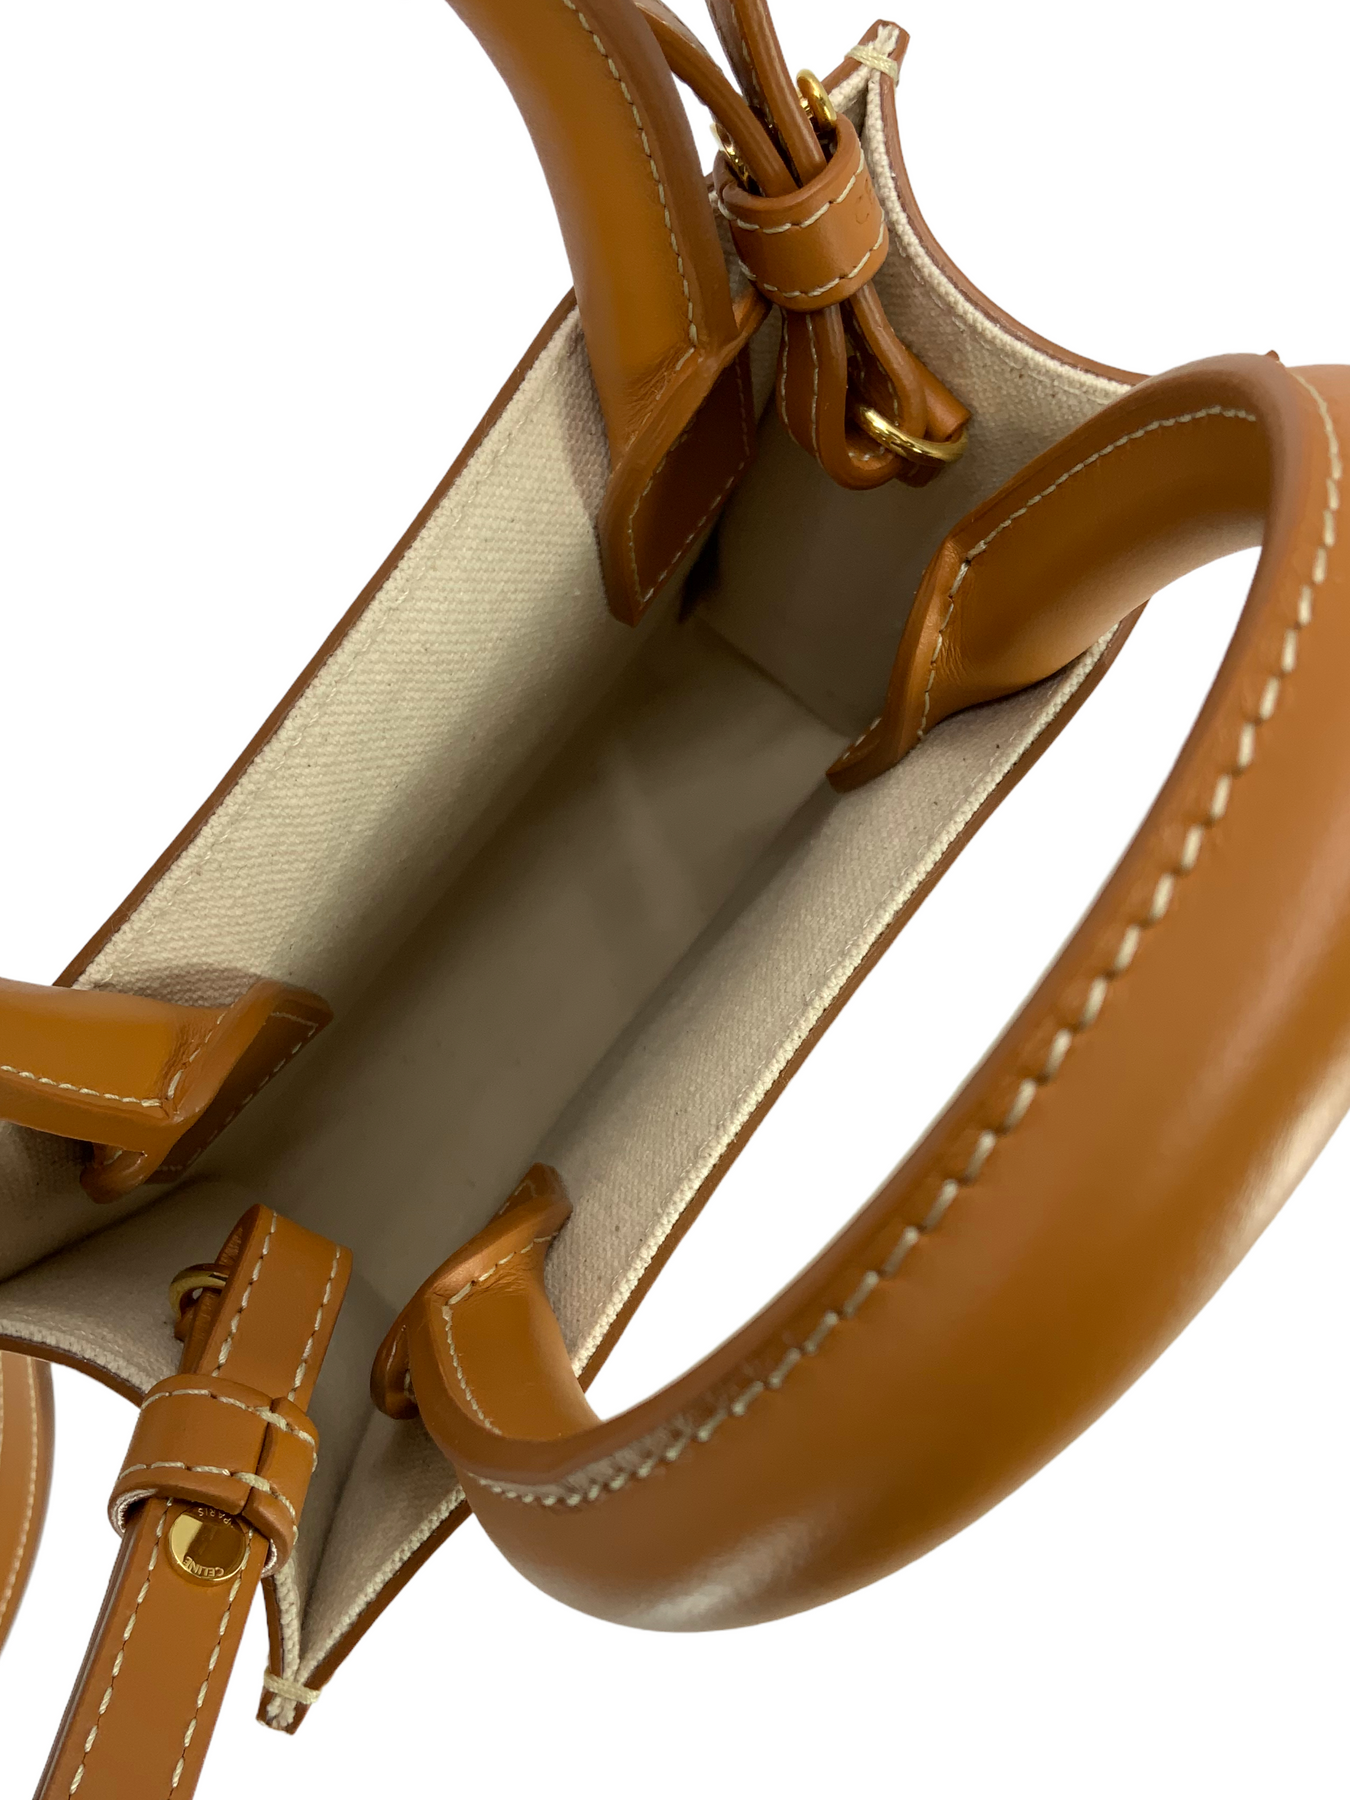 Buy Celine Celine Vertical Cabas Celine Canvas Tote Bag for Unisex in  Ochre/Tan 2023 Online